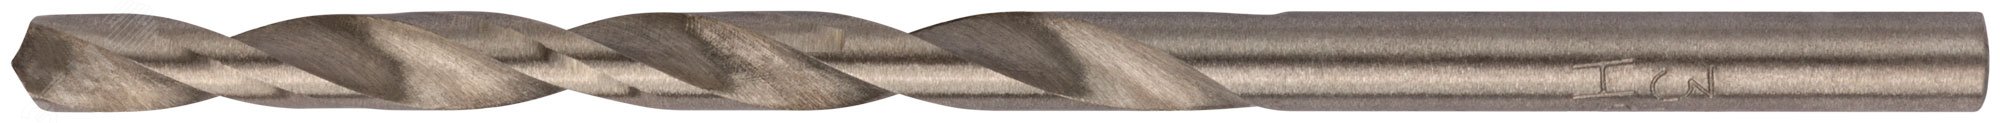 Сверла по металлу HSS полированные 3.5 мм (10 шт) 33735 FIT - превью